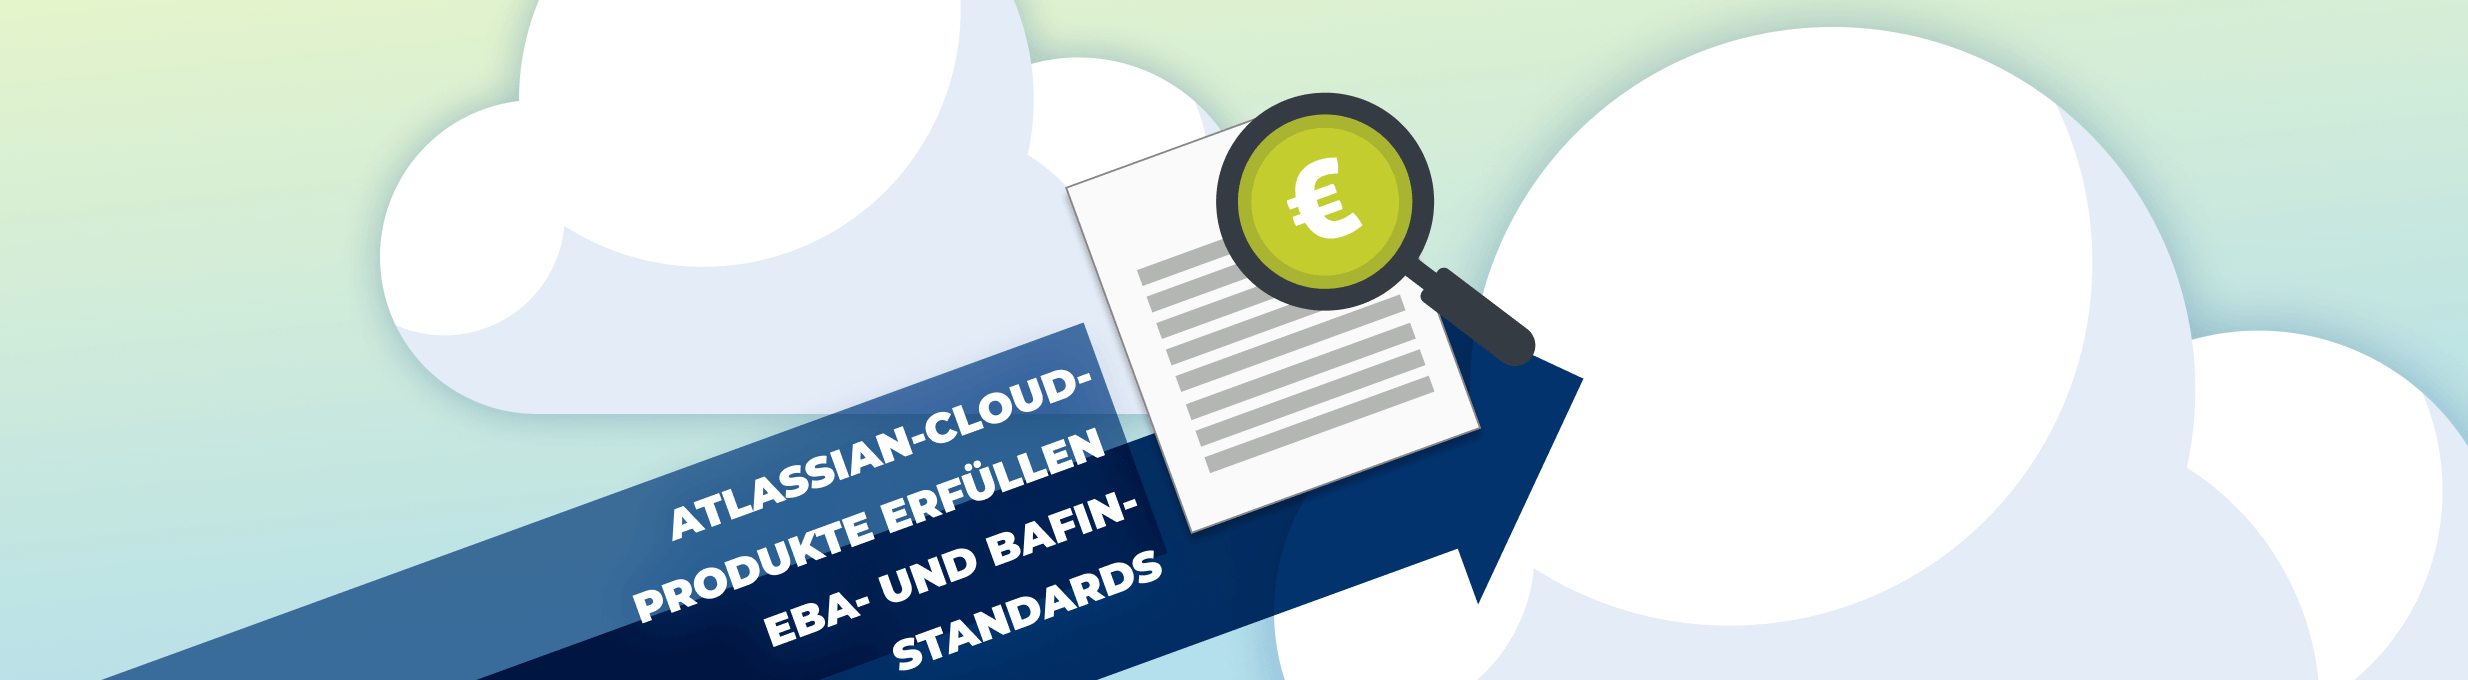 Neue Datenschutzmaßnahmen: Atlassian-Cloud-Produkte erfüllen Compliance-Standards der EBA und BaFin